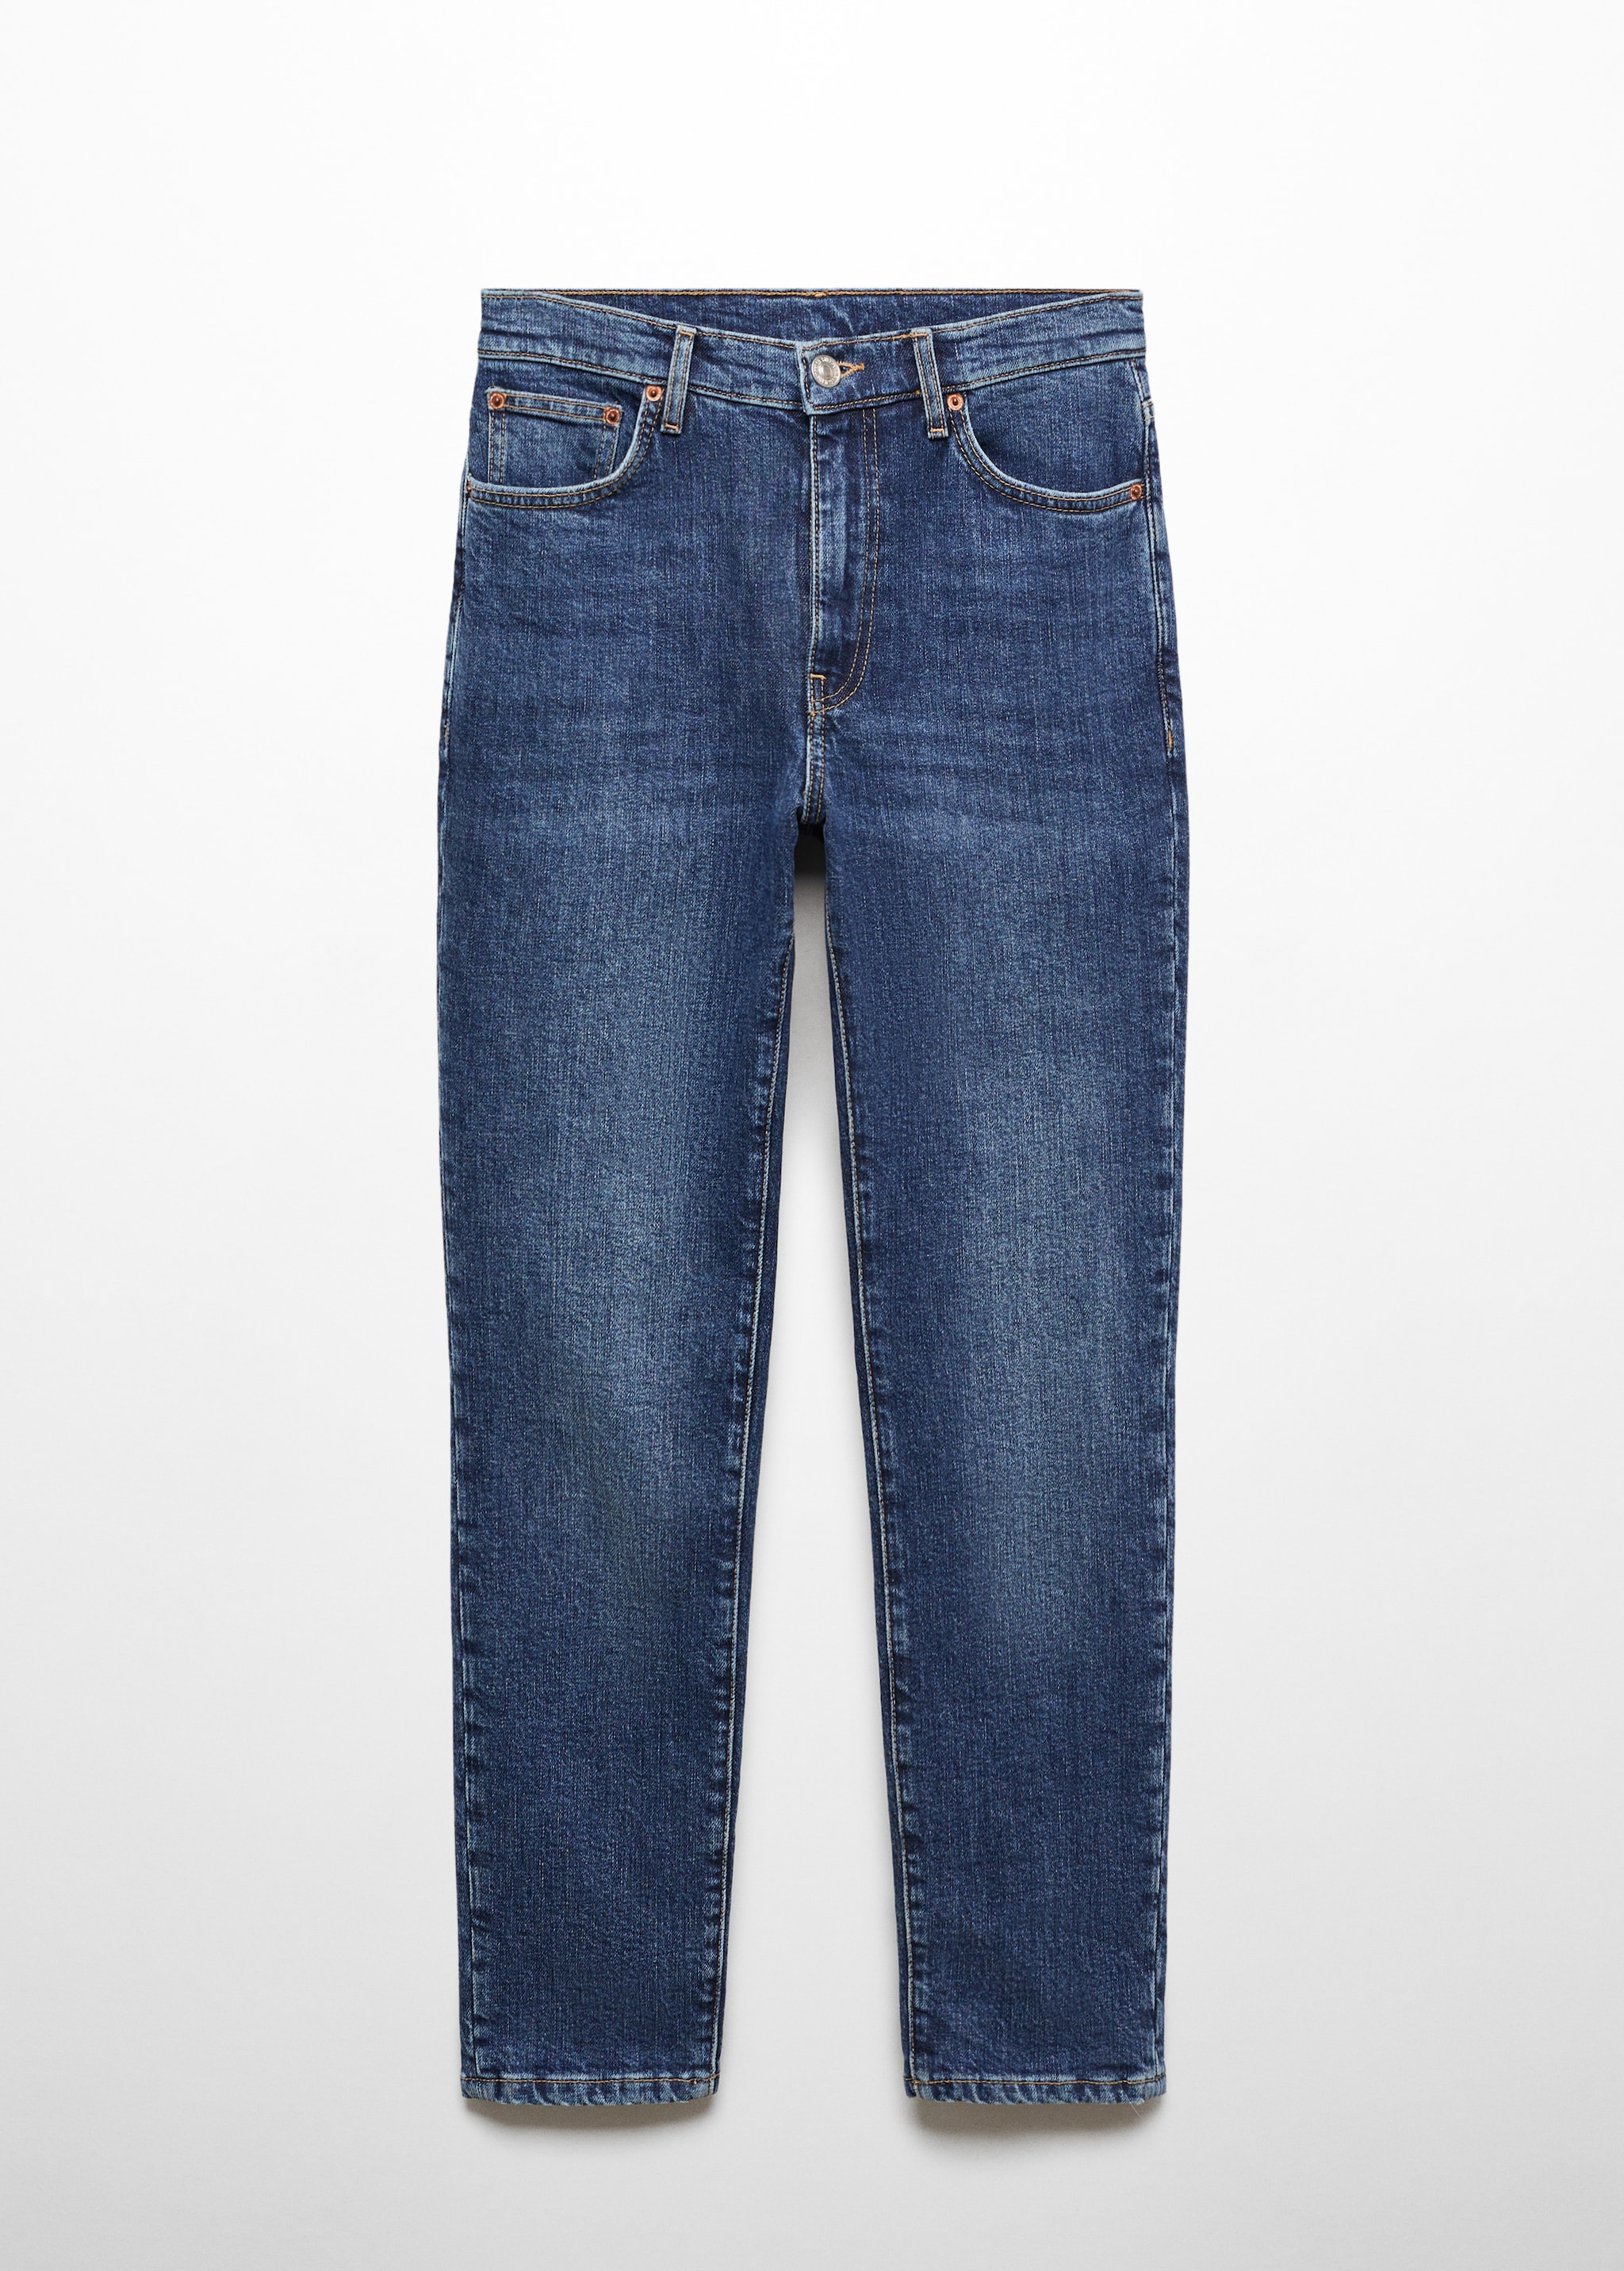 Укороченные джинсы slim Claudia - Изделие без модели